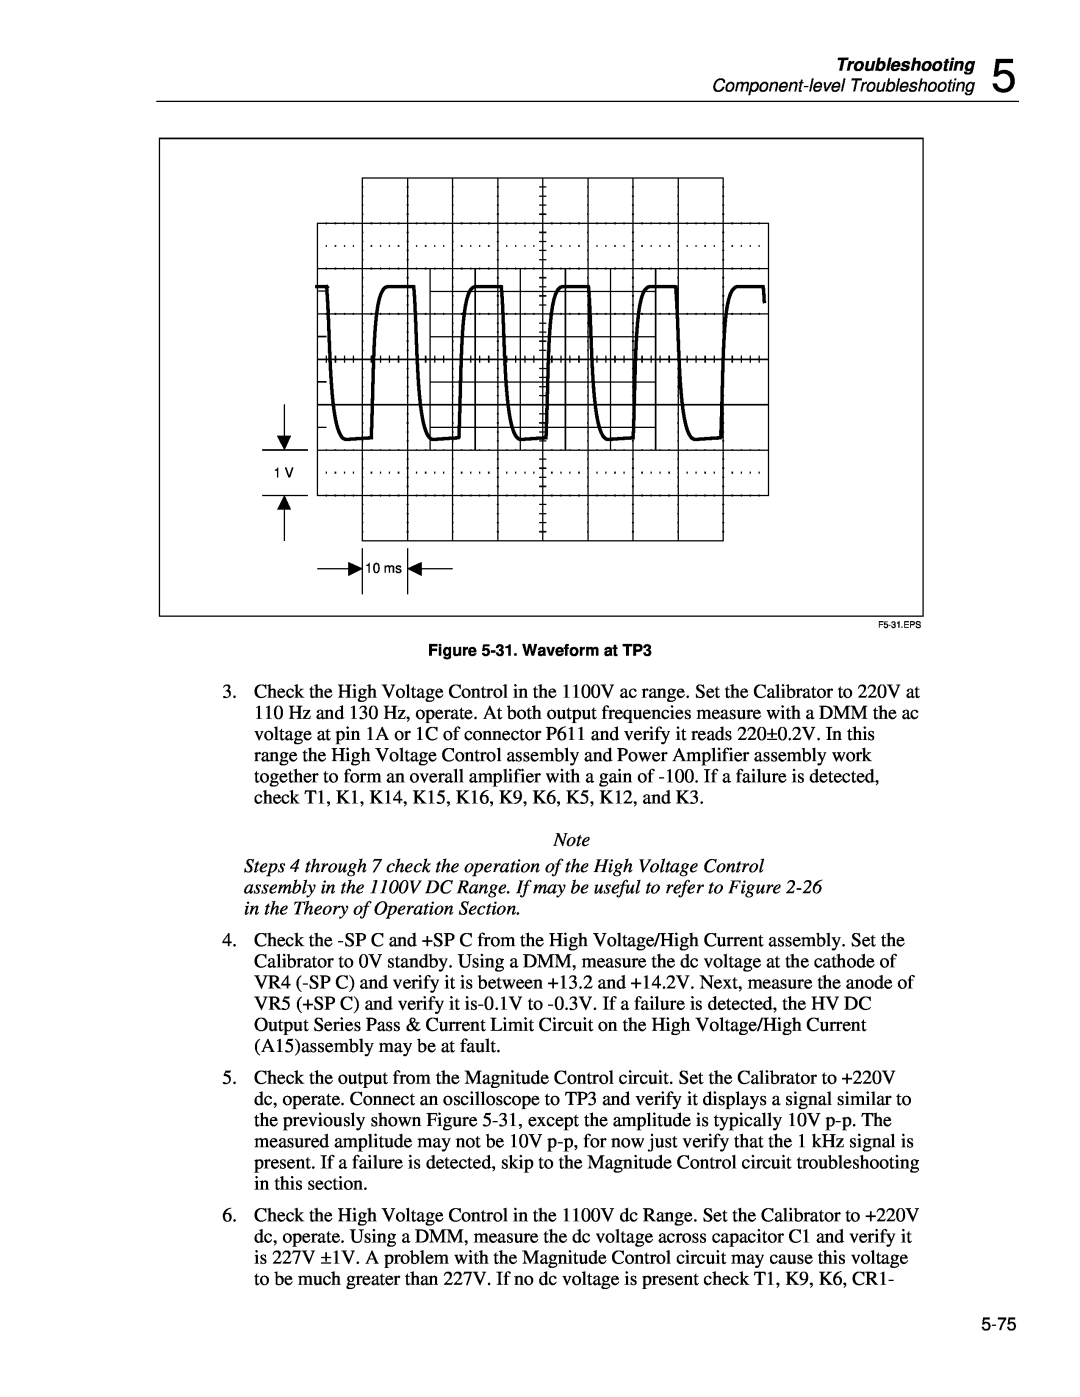 Fluke 5720A service manual 31. Waveform at TP3, F5-31.EPS 